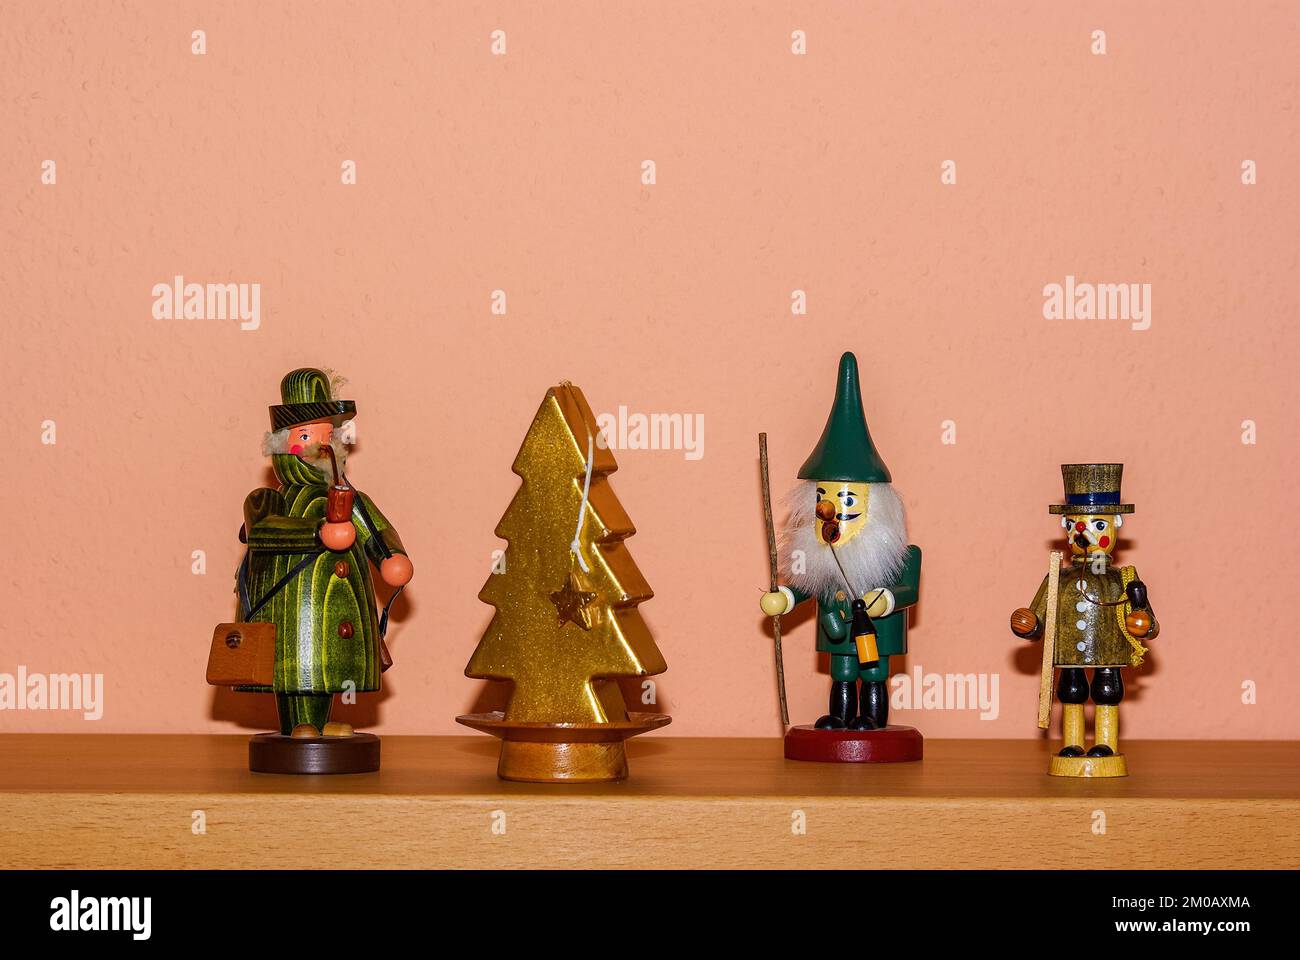 Decorazione natalizia composta da tre fumatori di incenso e una candela a forma di abete, su una mensola come stand. Foto Stock